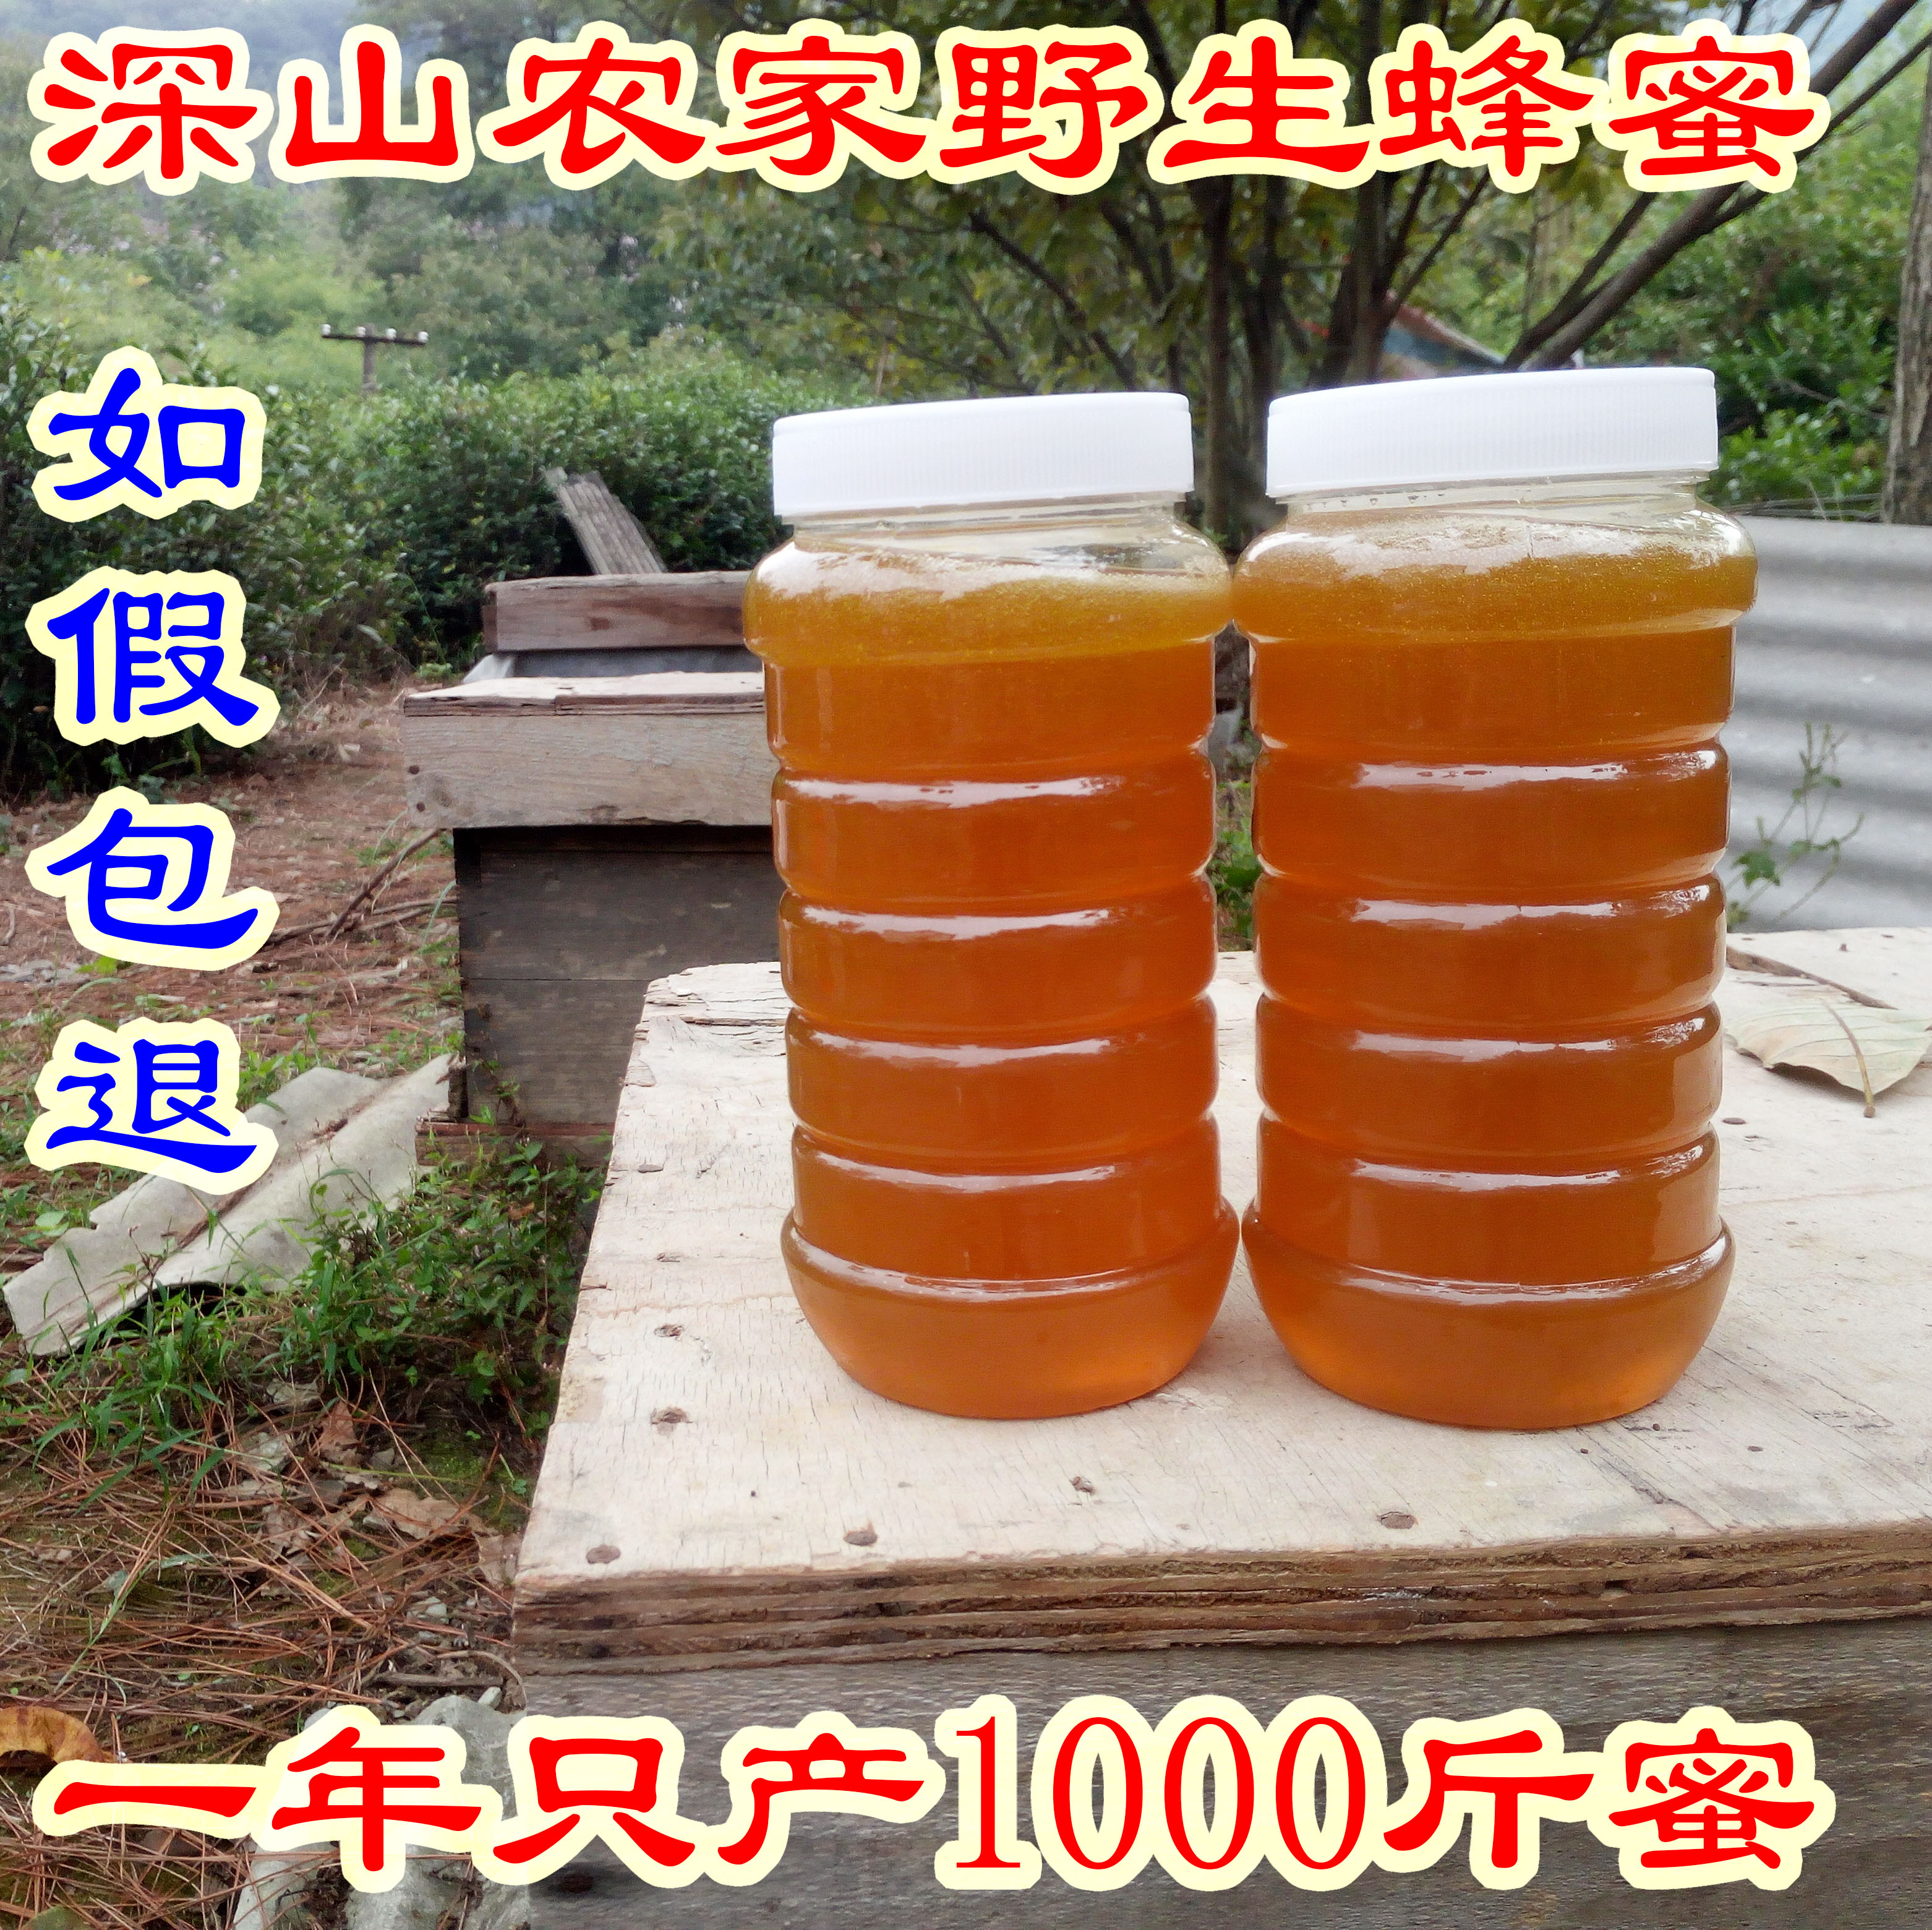 农家自产野生蜂蜜土蜂蜜中蜂天然蜂蜜百花蜜500g包邮